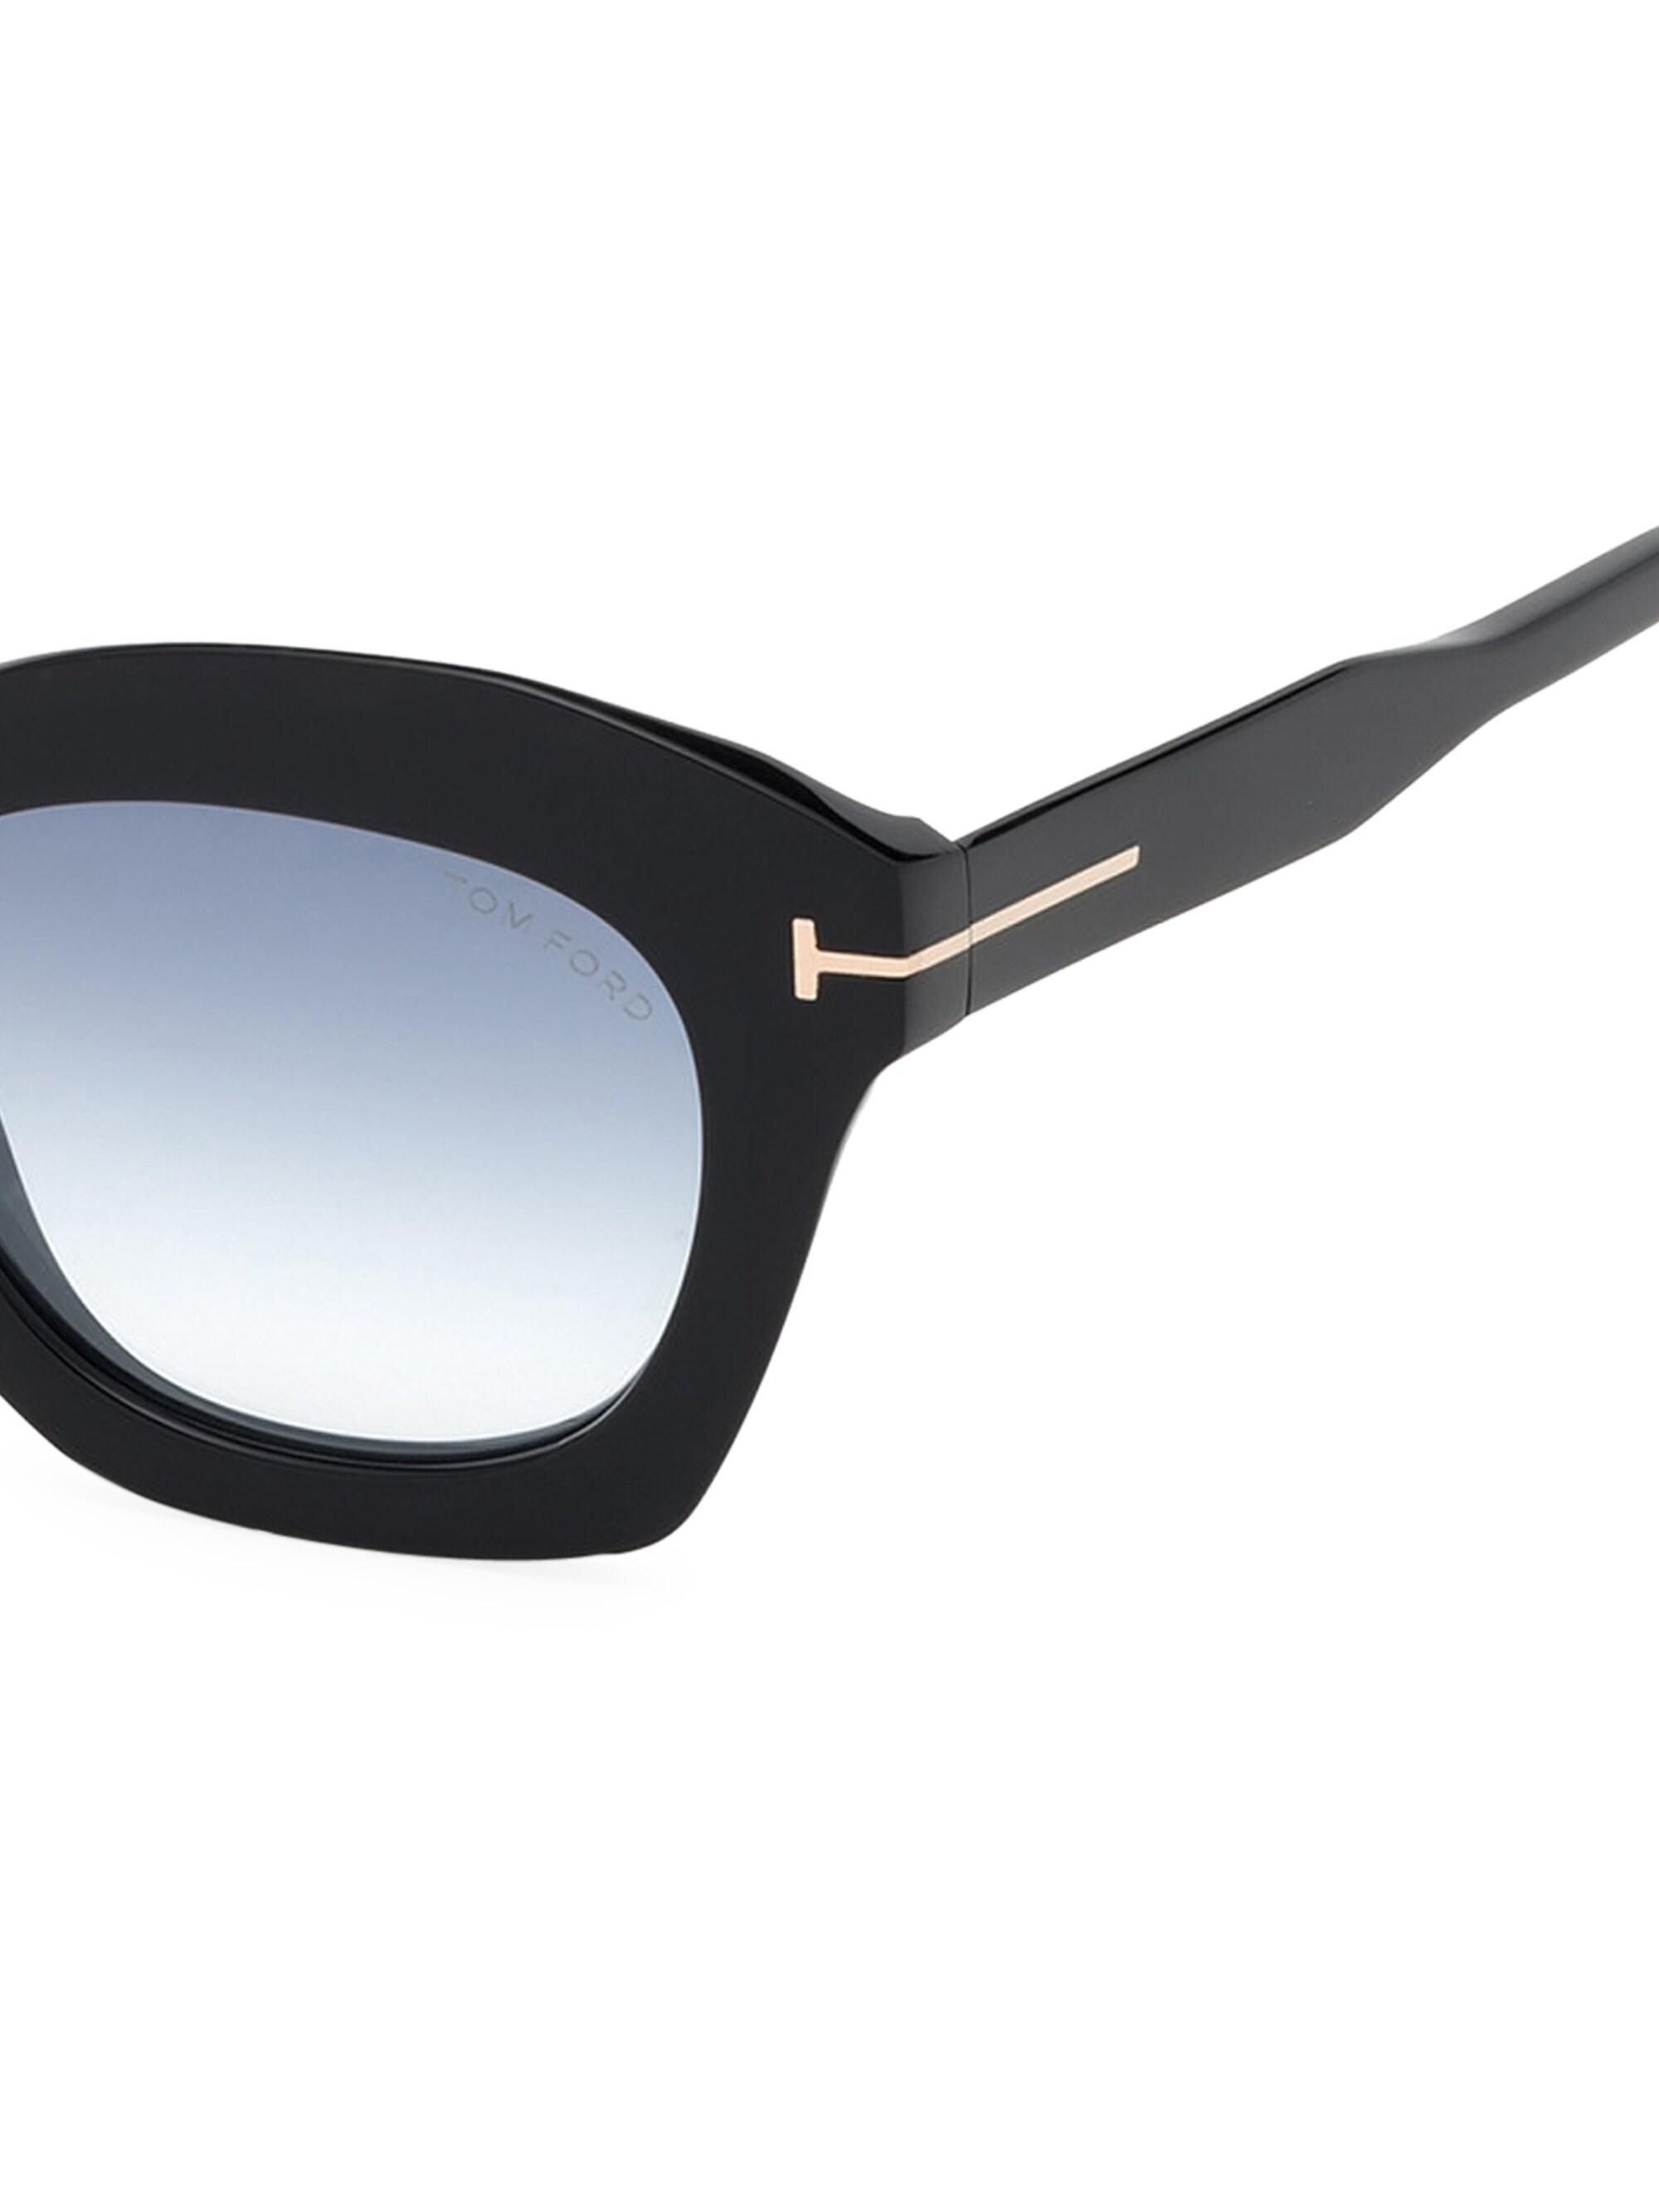 Tom Ford Women S Bardot 53mm Cat Eye Sunglasses Black Gold In Black